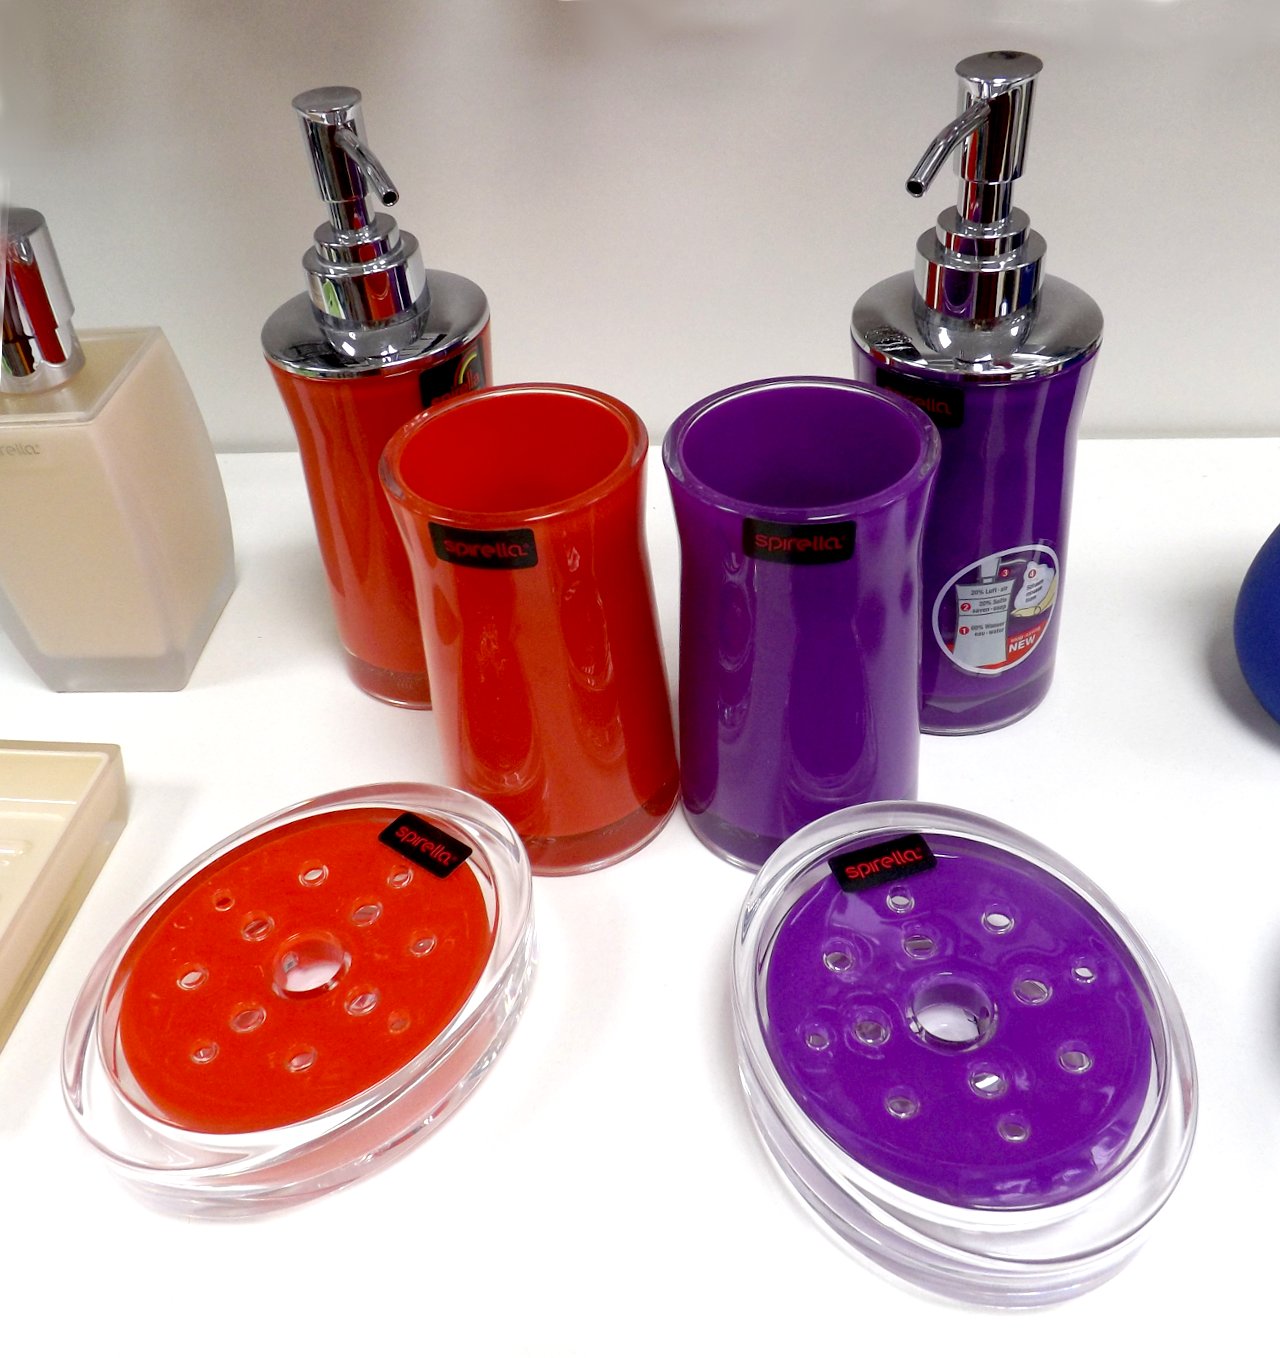 Аксессуары швейцарской фирмы Spirella из ассортимента 2015 года: дозаторы для мыла, мыльницы и стаканы для щёток